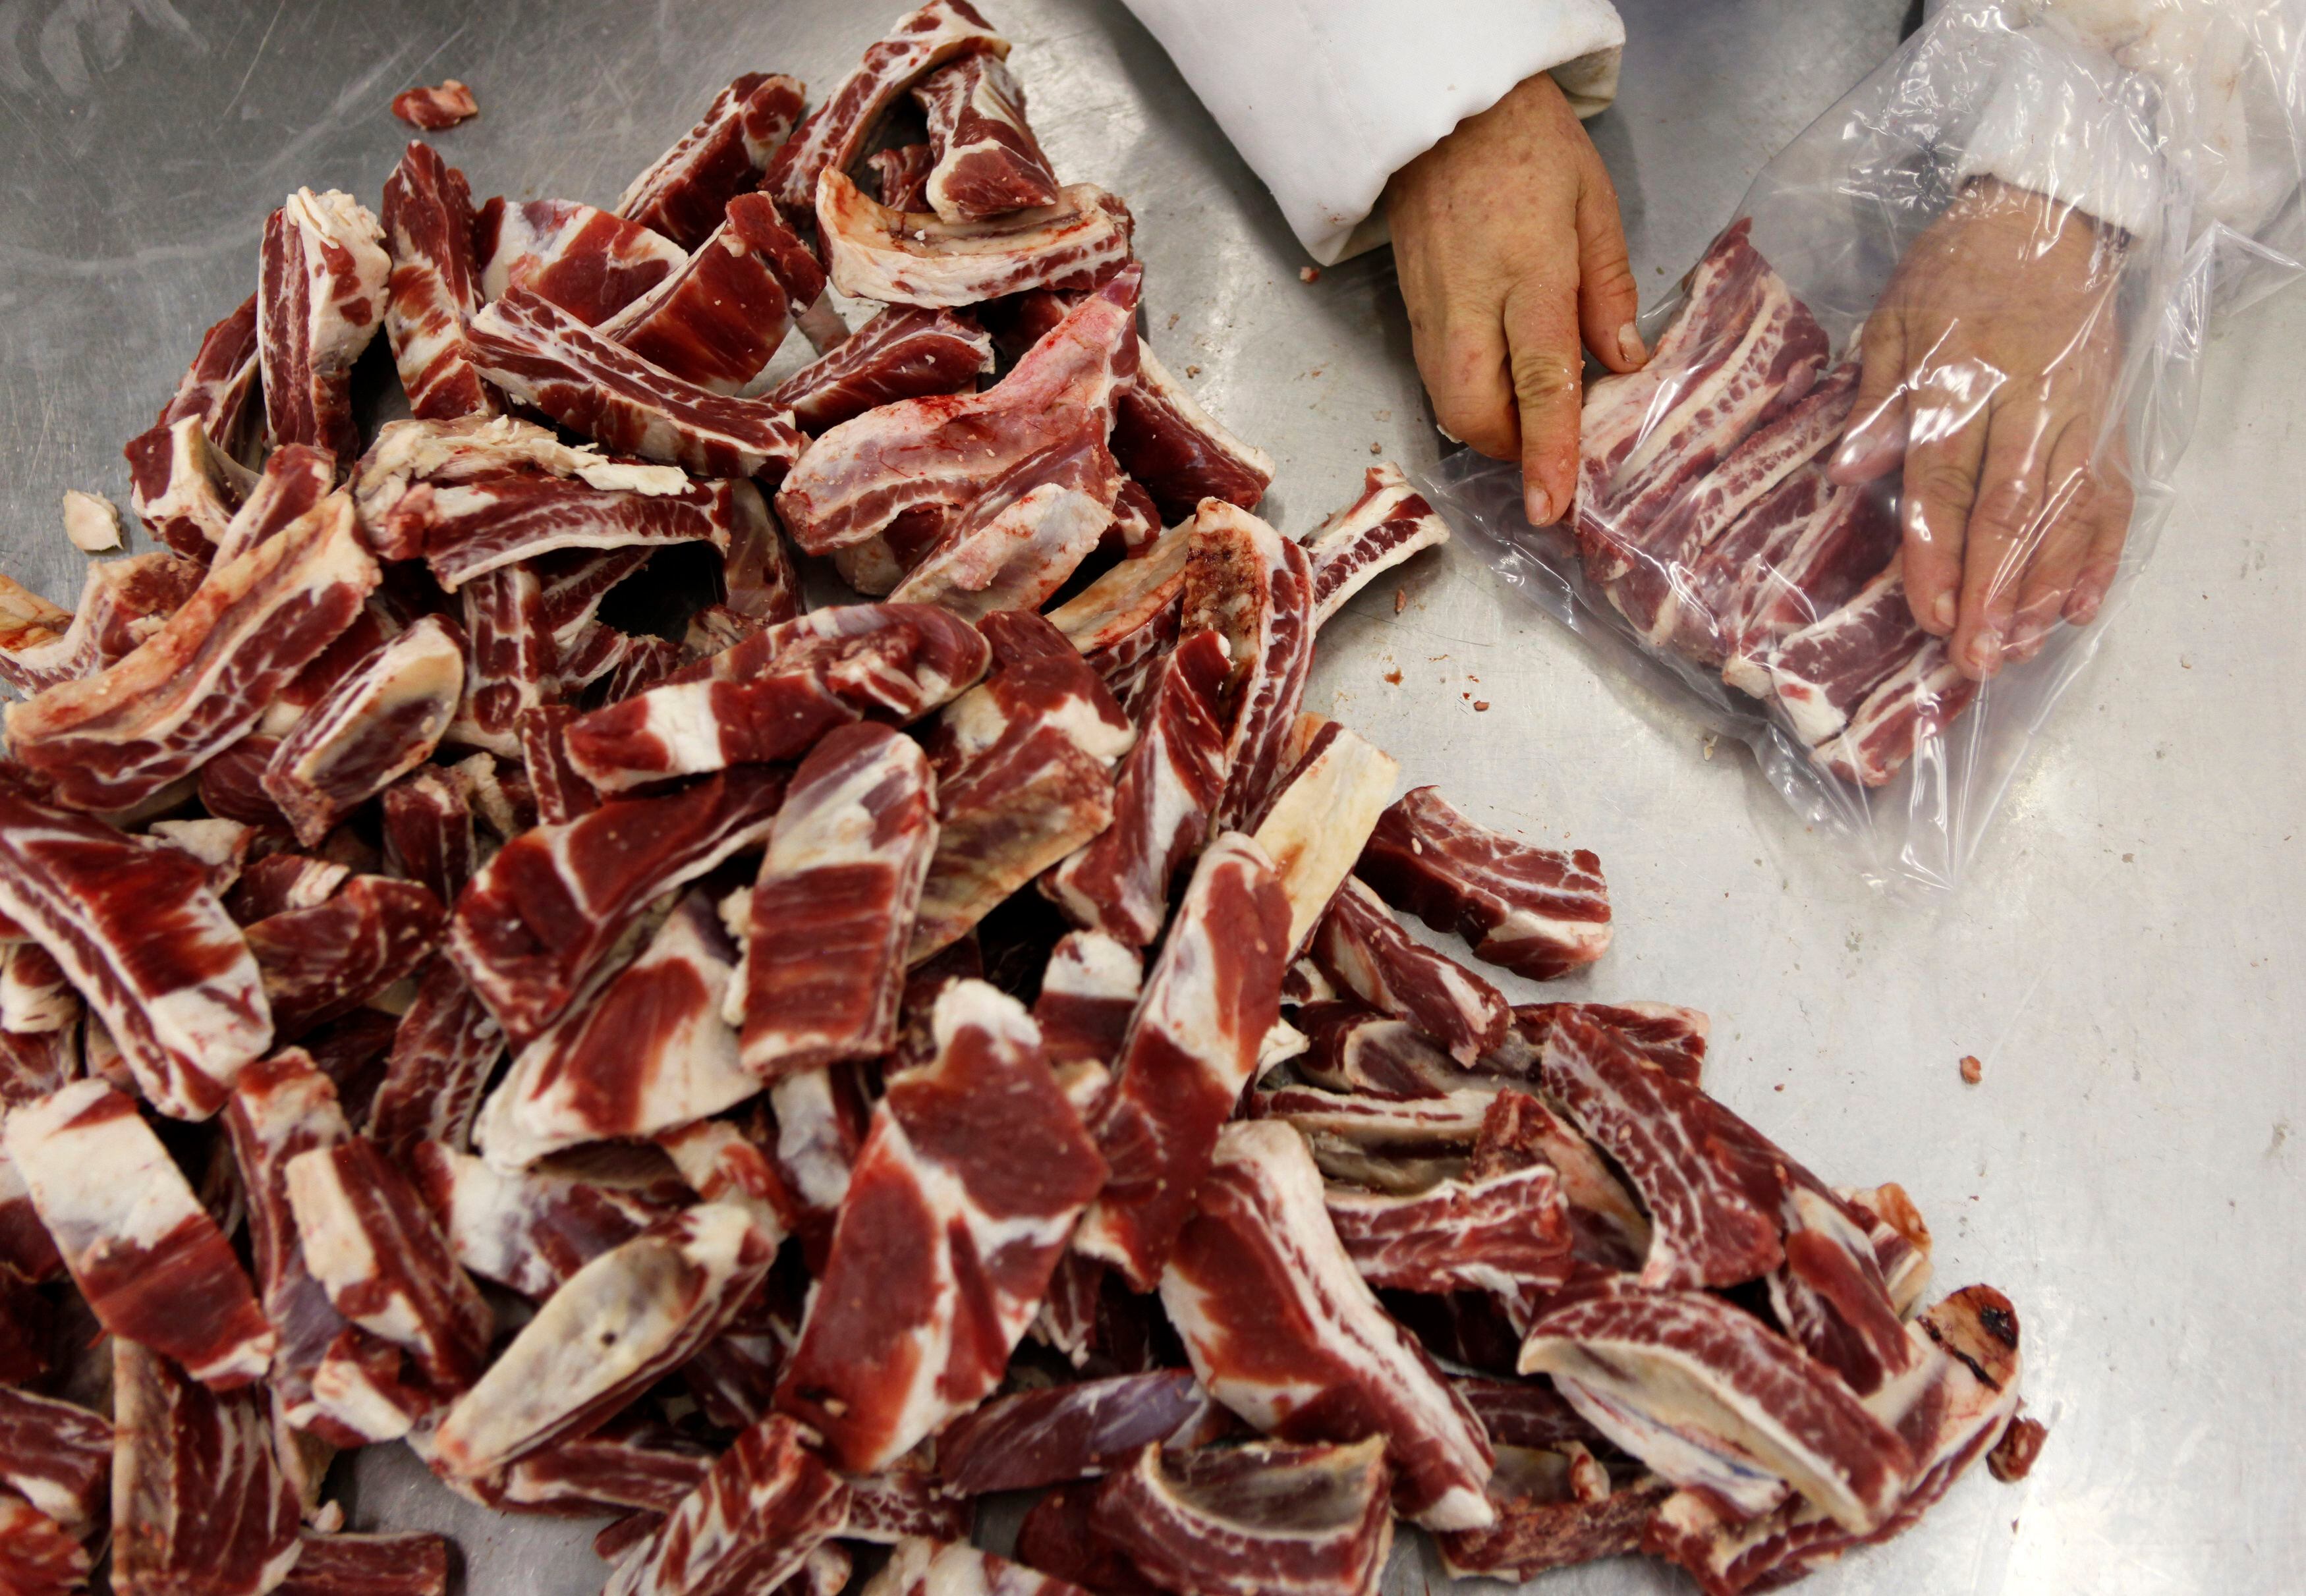 Foto de archivo. Producción de carne bovina en frigorífico de Brasil
15/09/2021
REUTERS/Paulo Whitaker (BRAZIL - Tags: ANIMALS FOOD EMPLOYMENT BUSINESS)